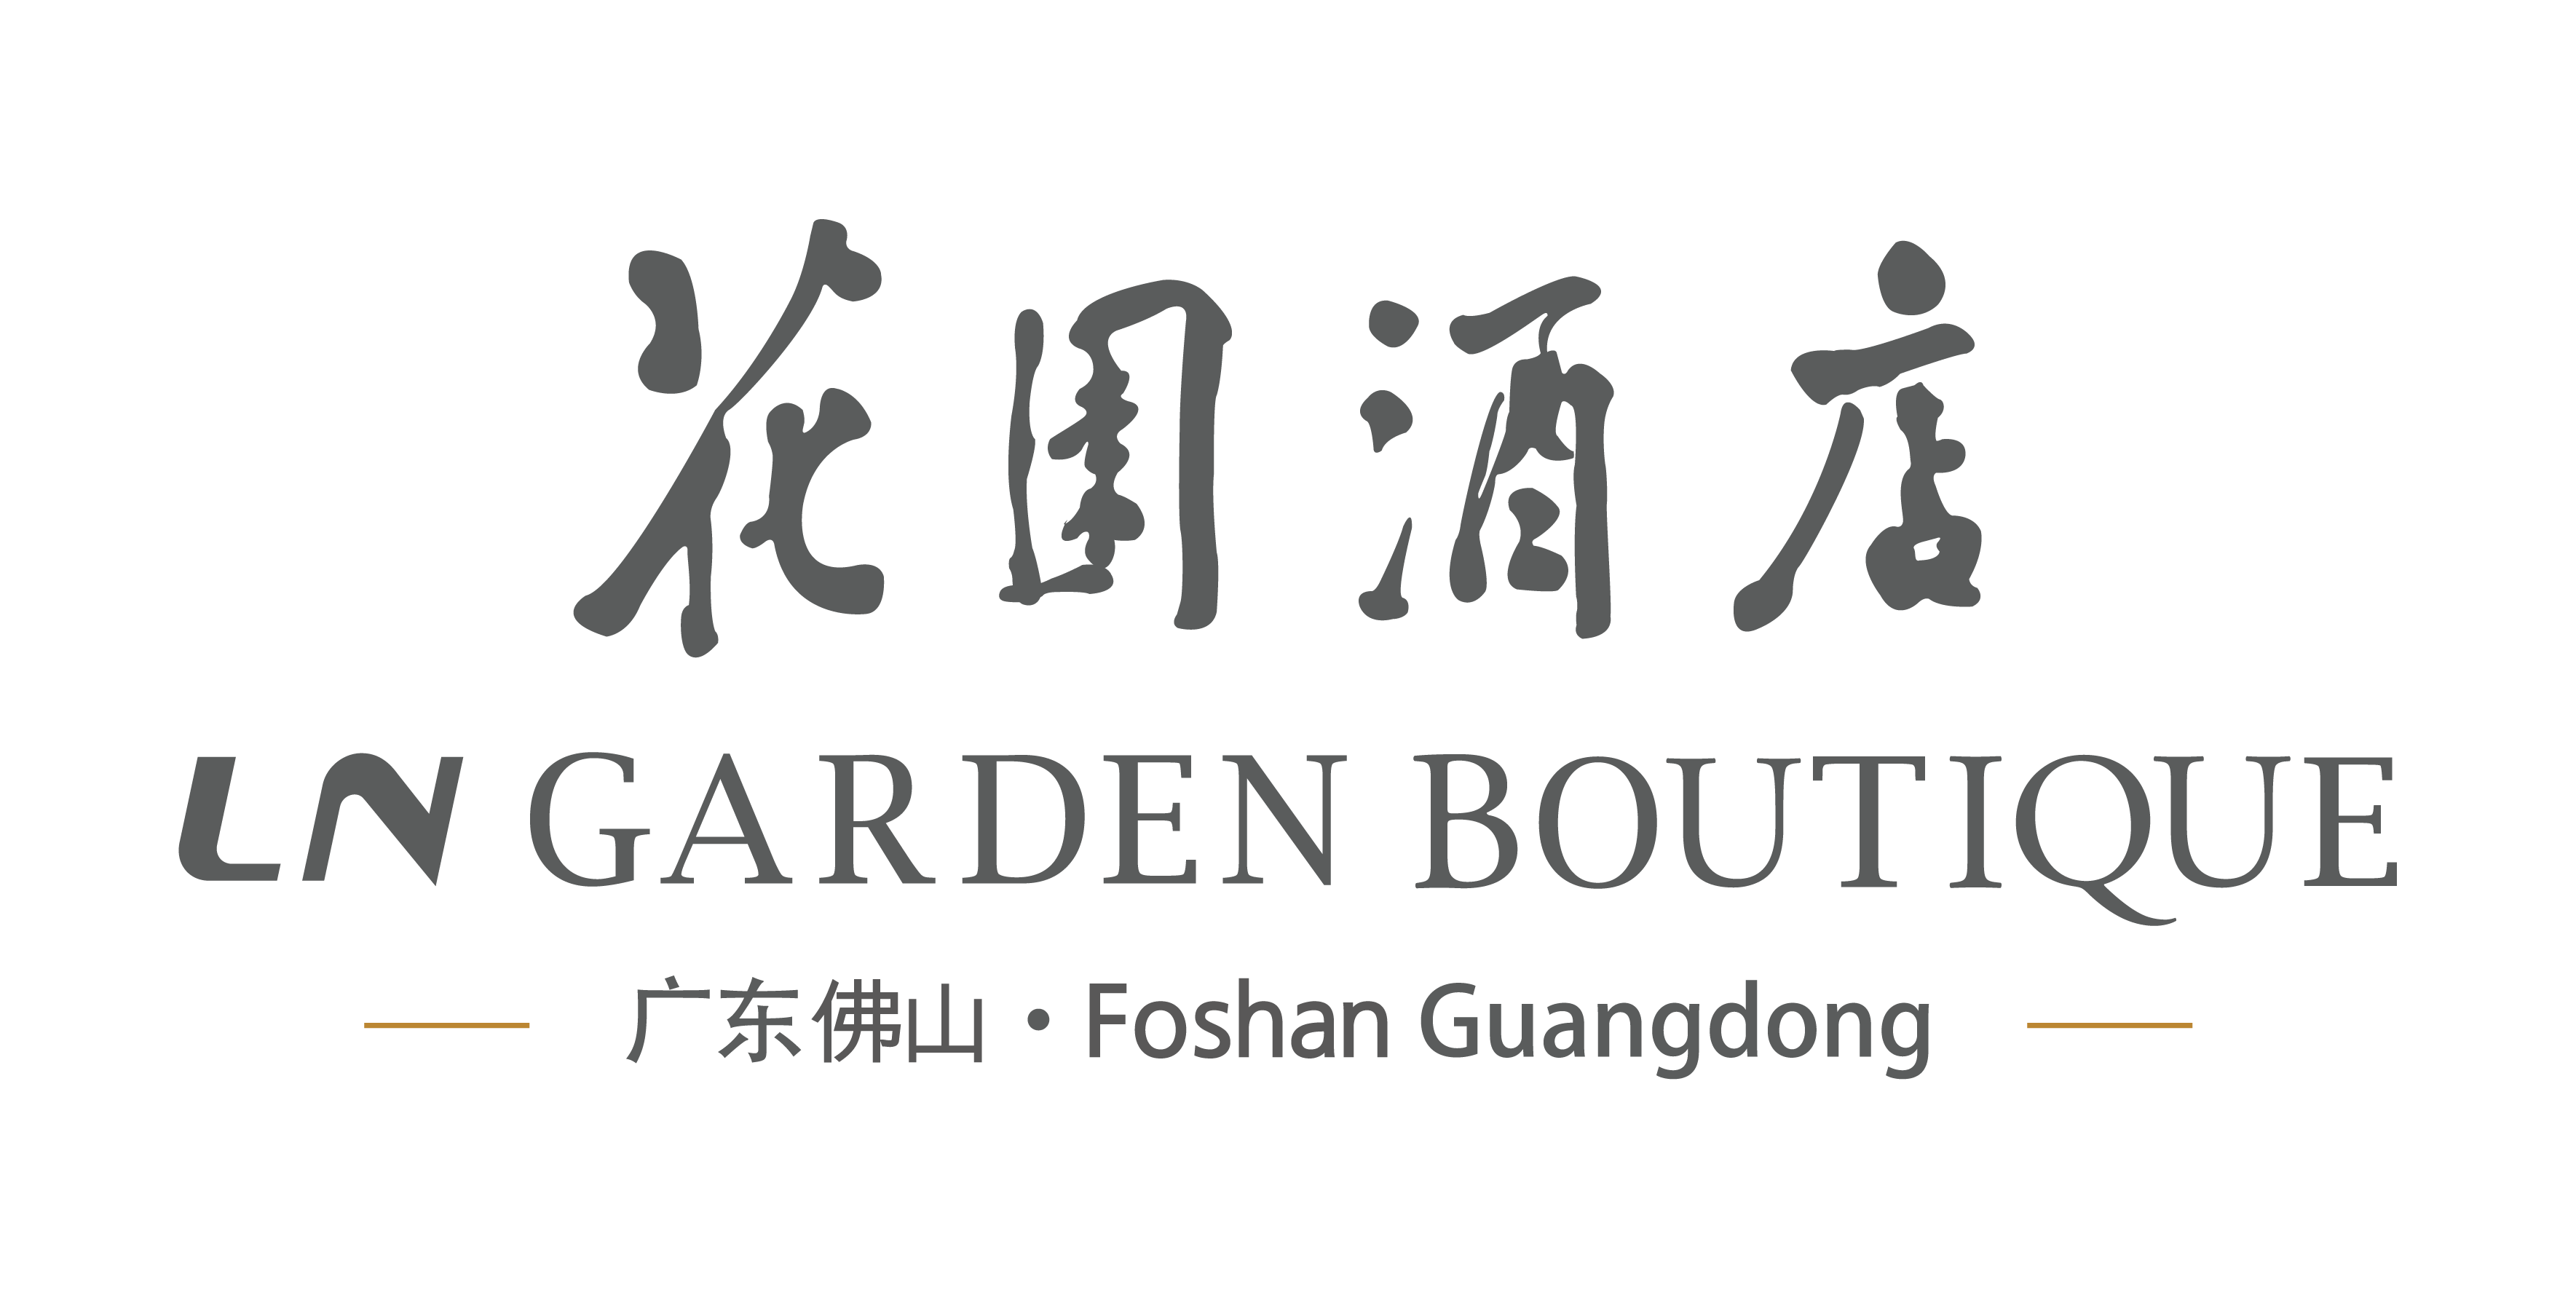 LN Garden Hotel,Foshan Guangdong